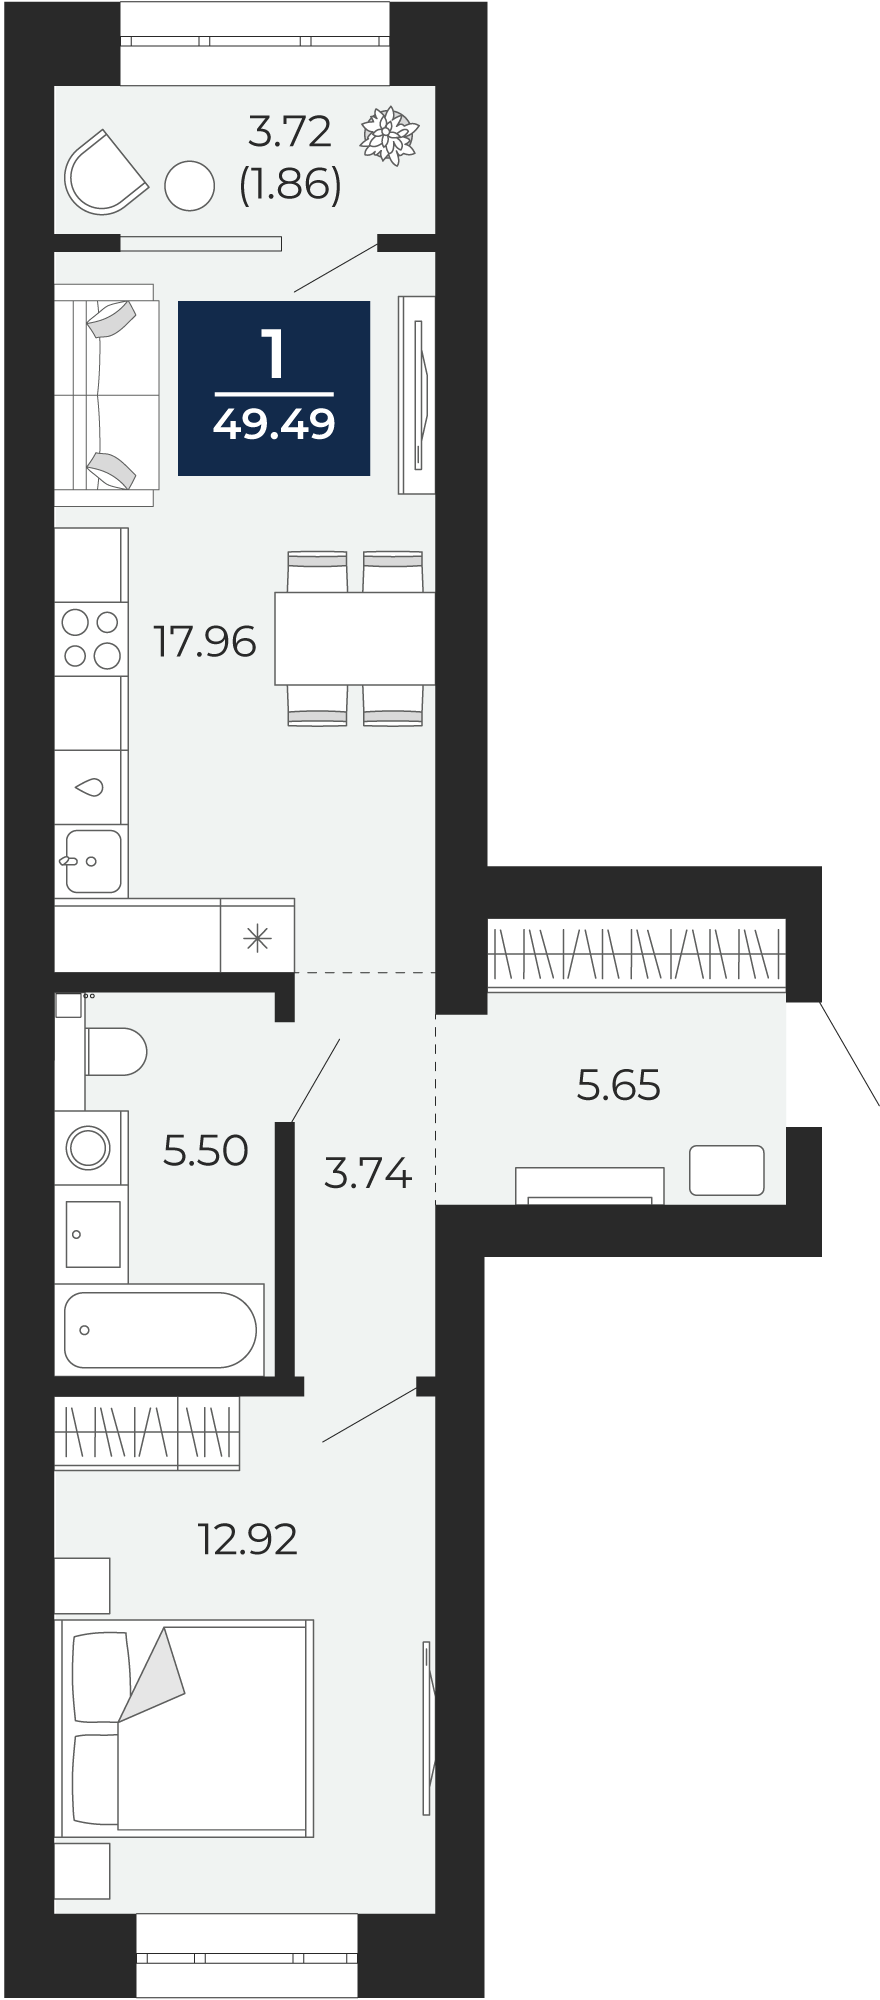 Квартира № 30, 1-комнатная, 49.49 кв. м, 6 этаж